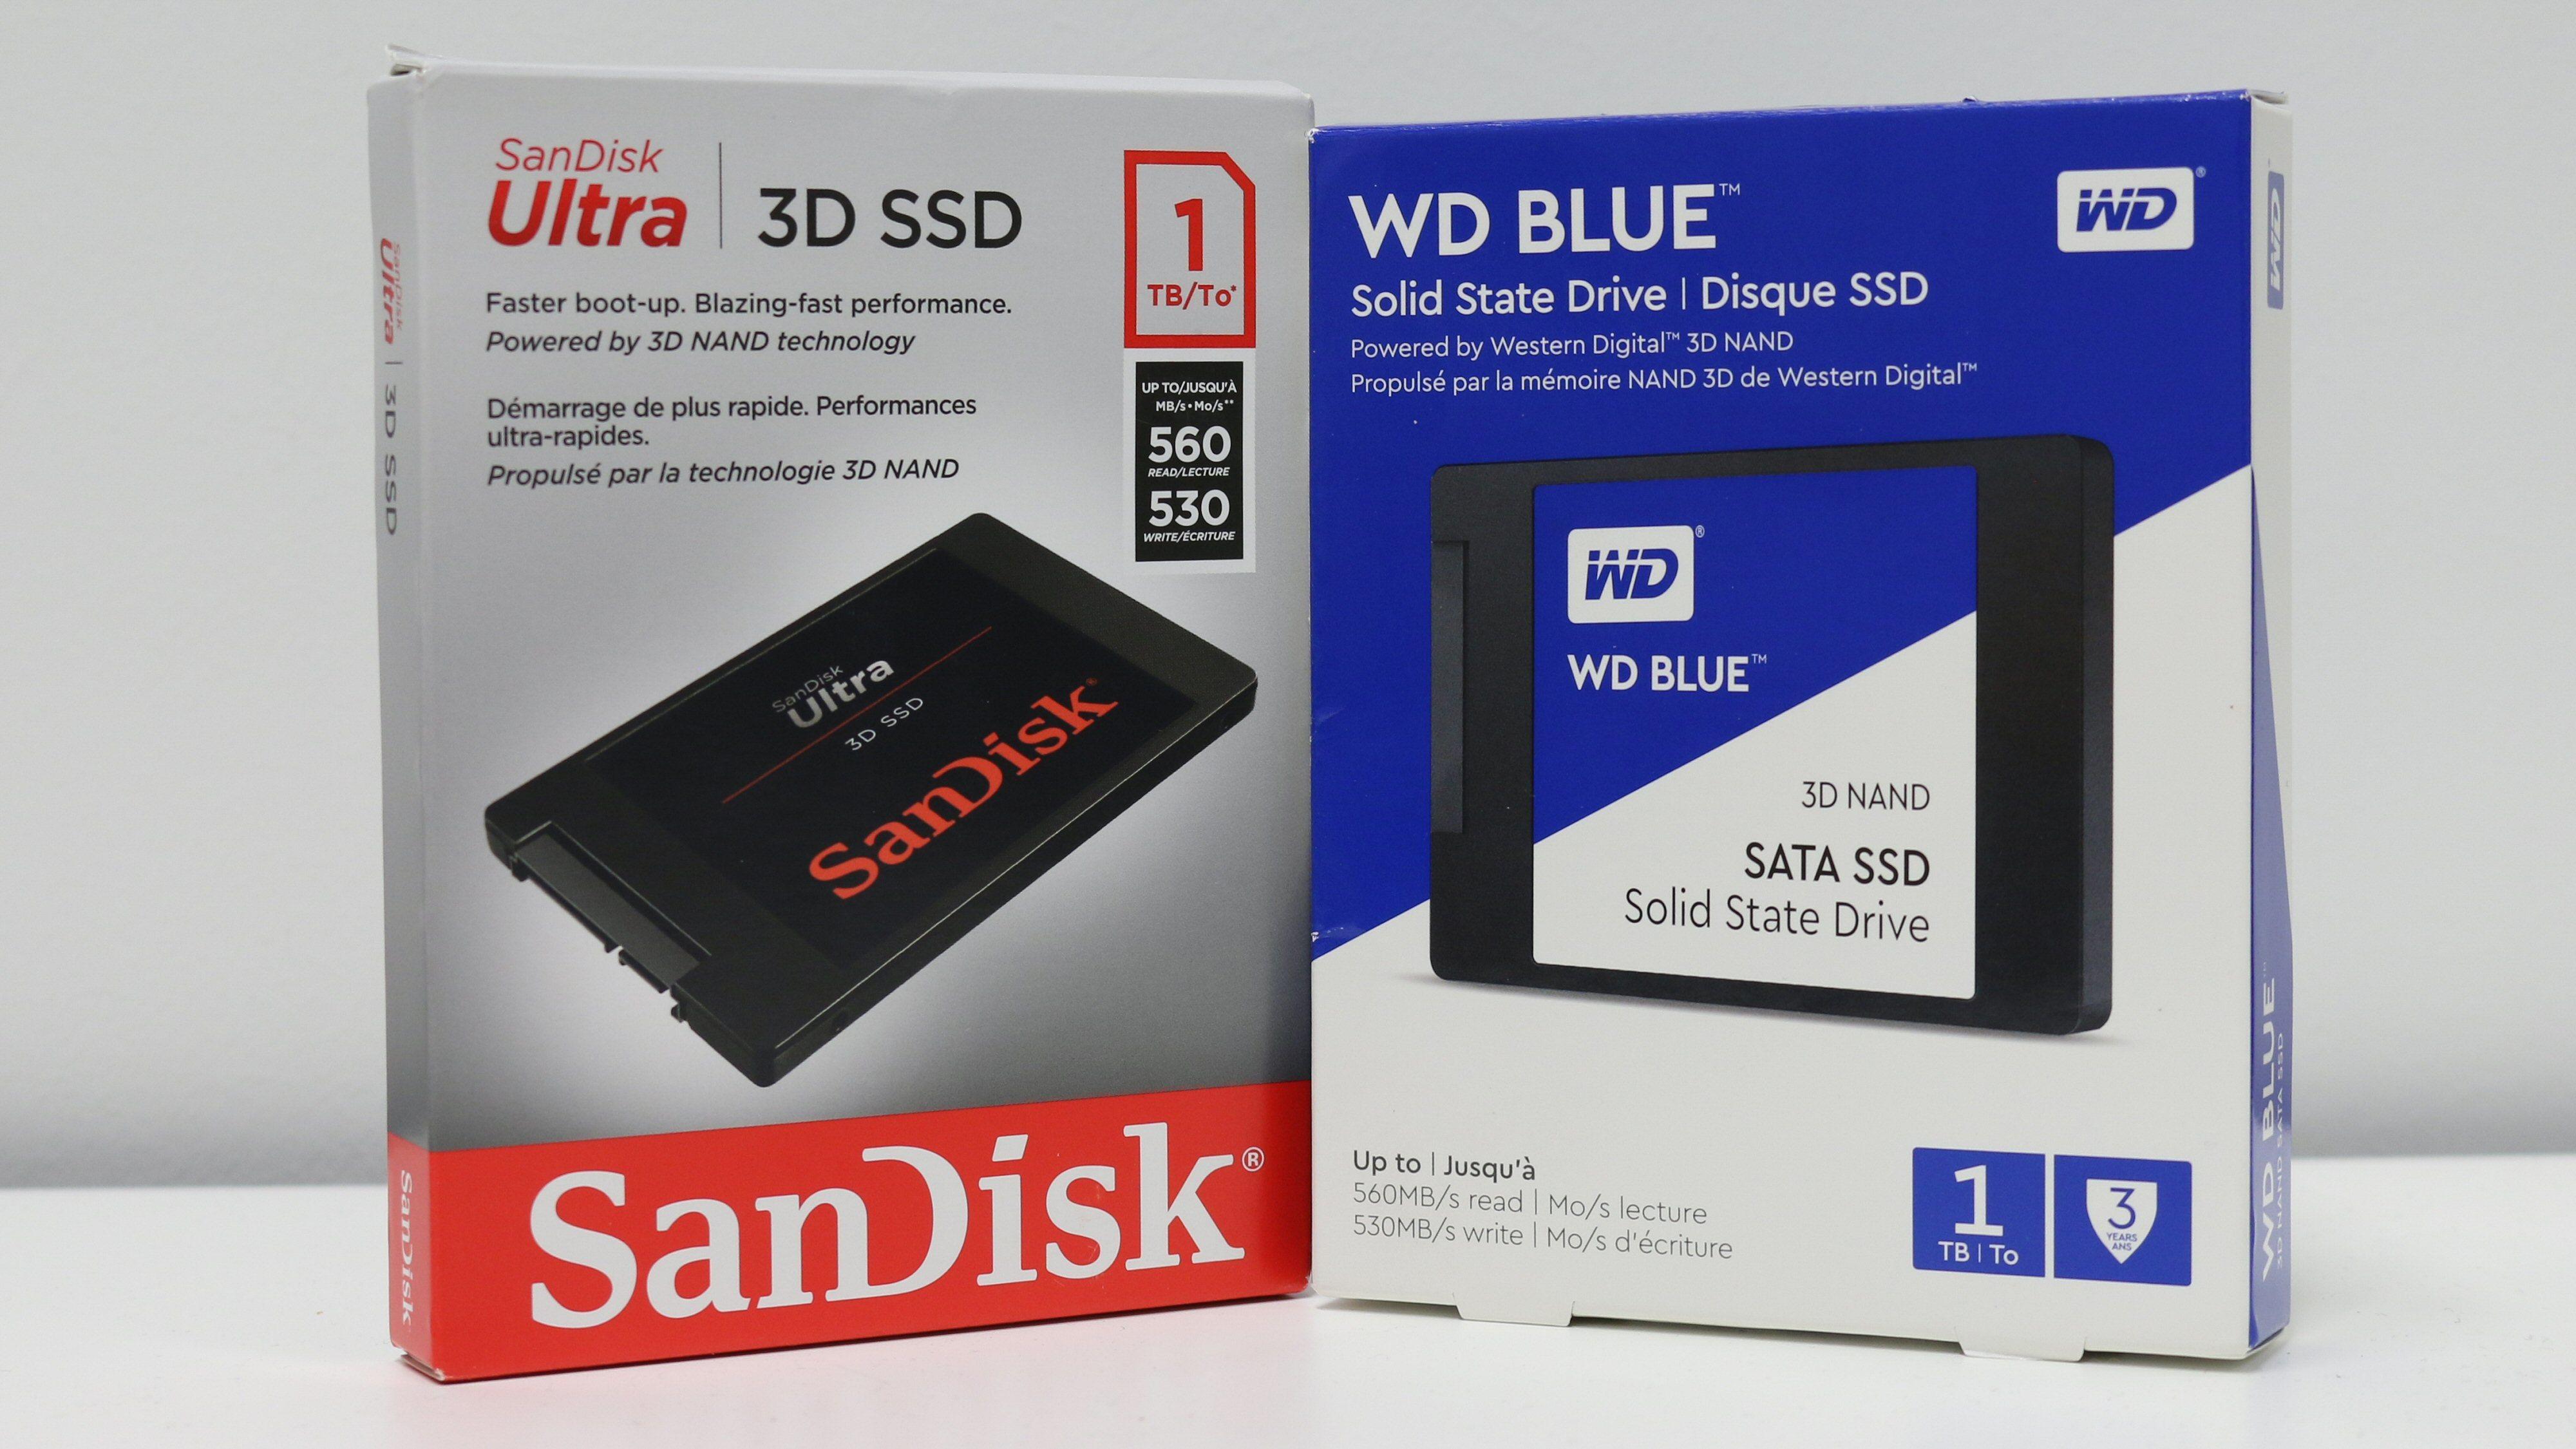 Comunismo Conciliar inteligencia SanDisk Ultra 3D og WD Blue 3D NAND SSD - Test - Tek.no